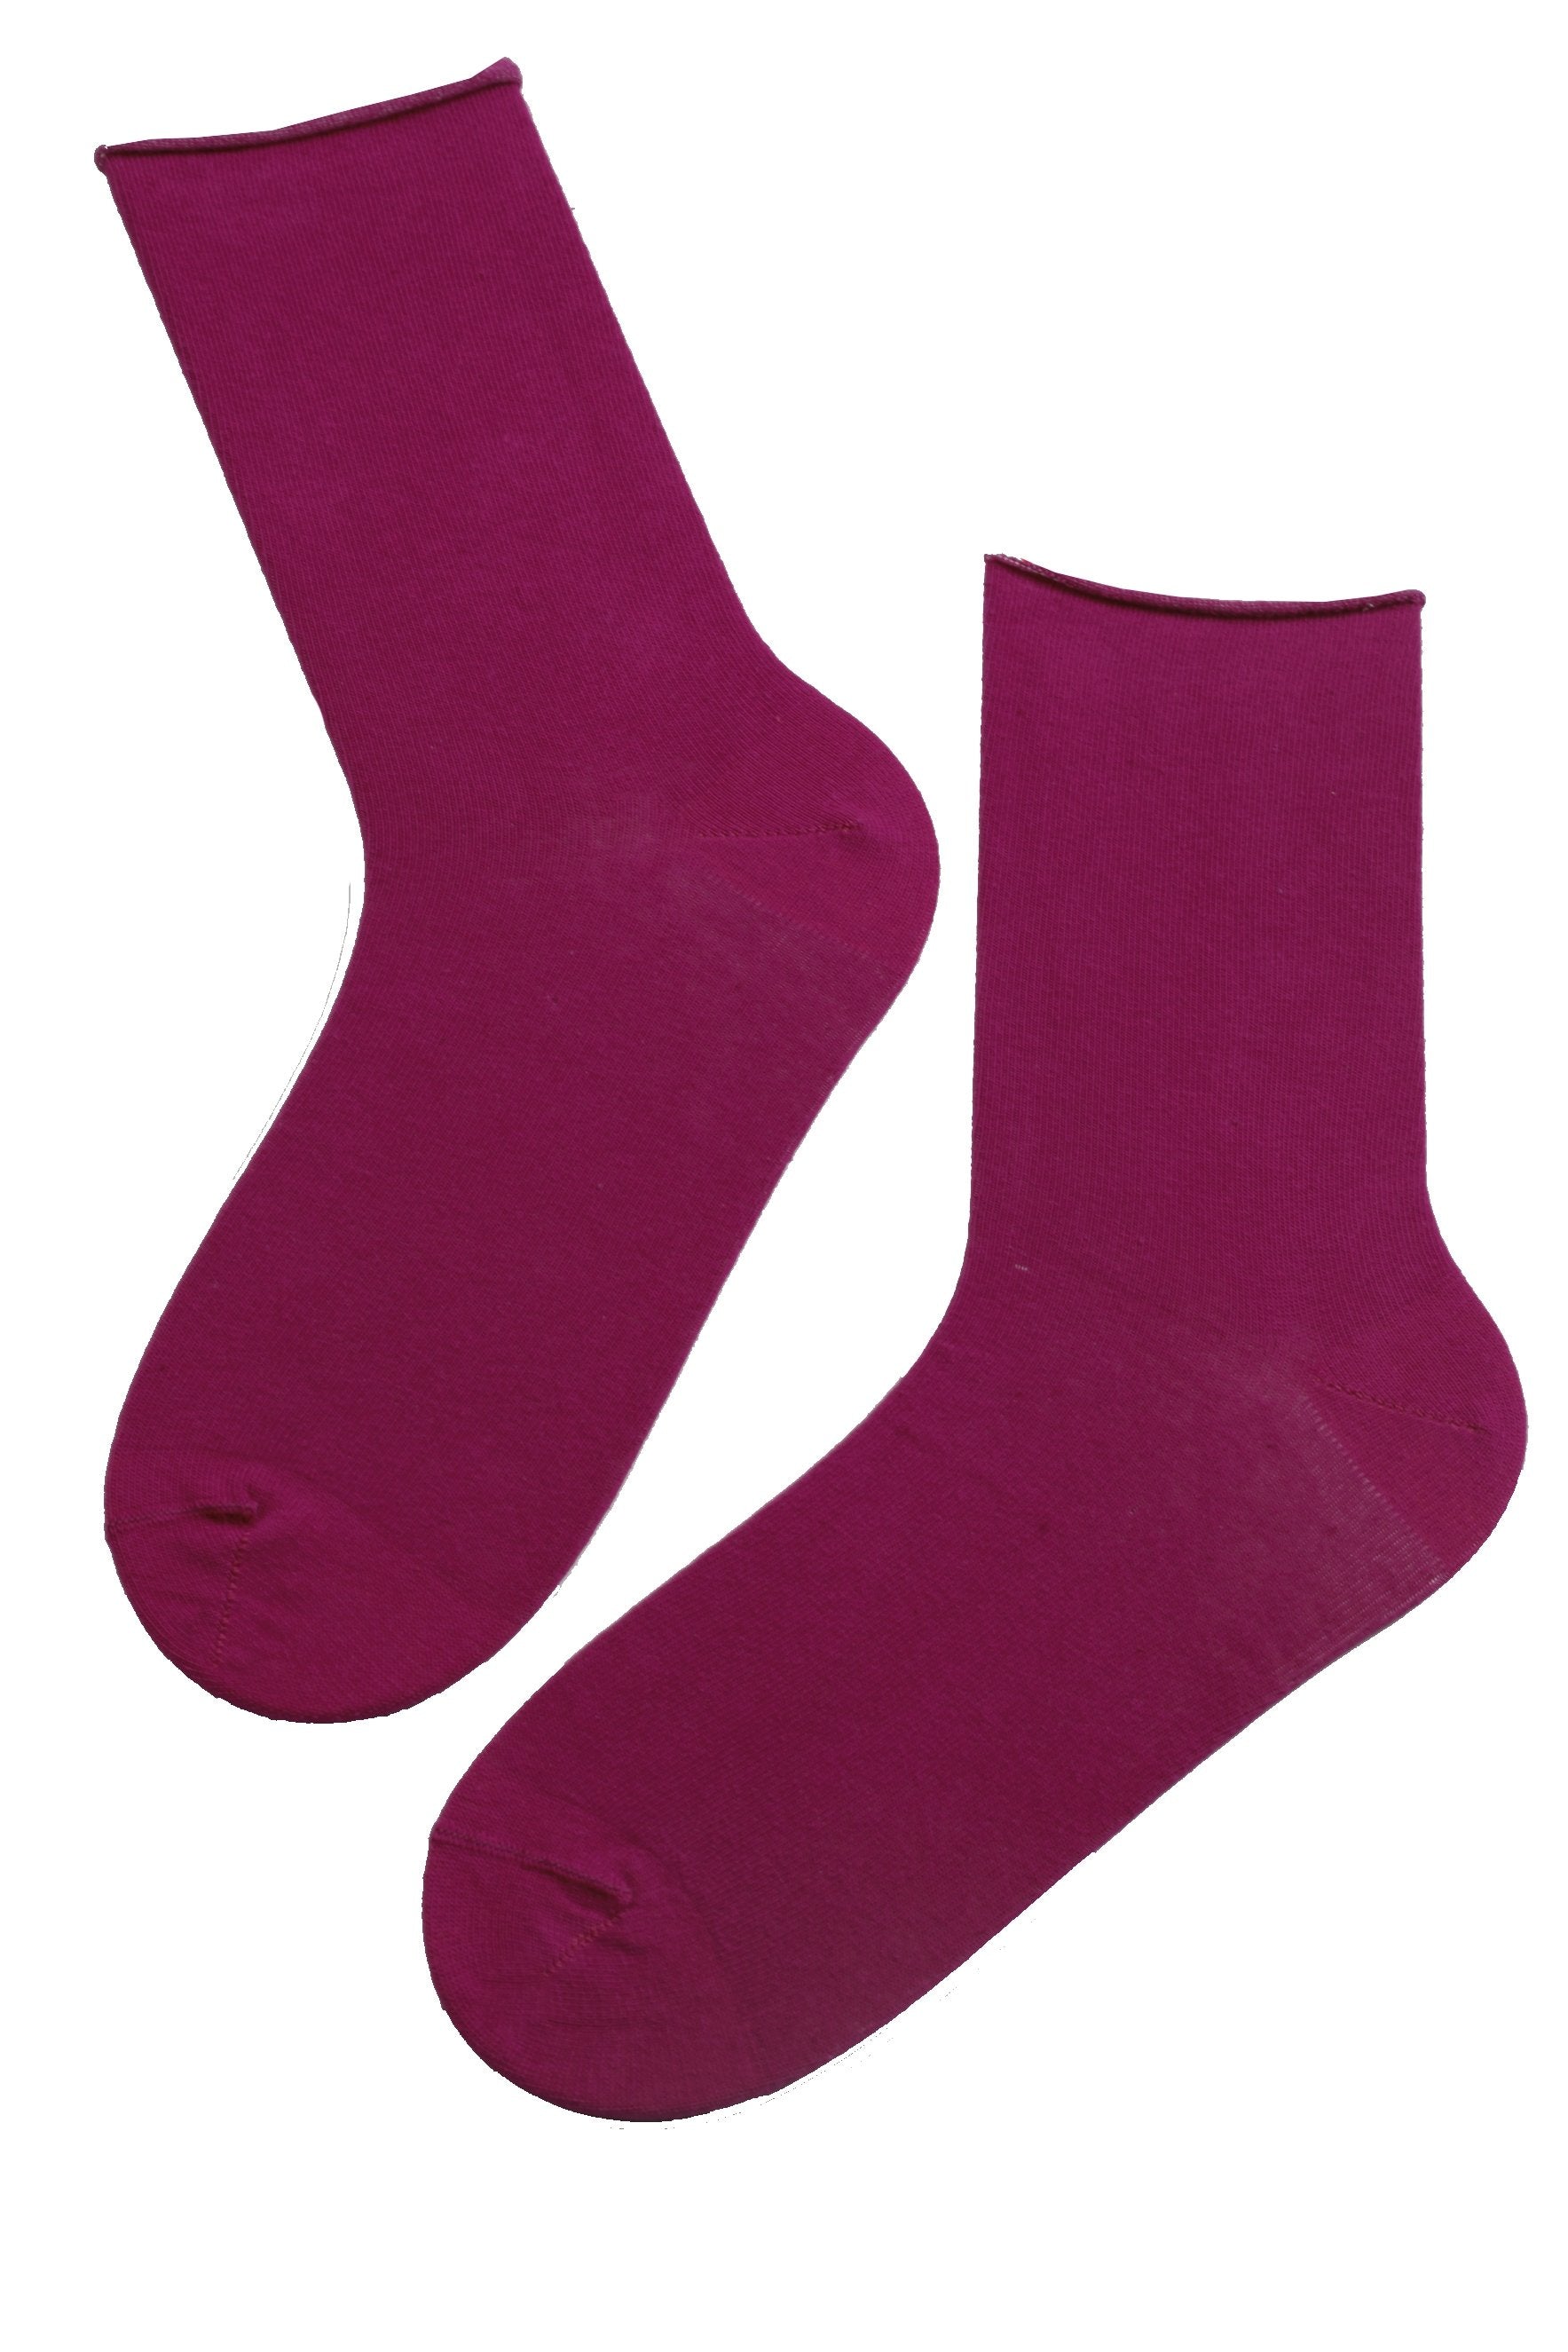 OLEV lila Socken mit einem bequemen Rand für Männer